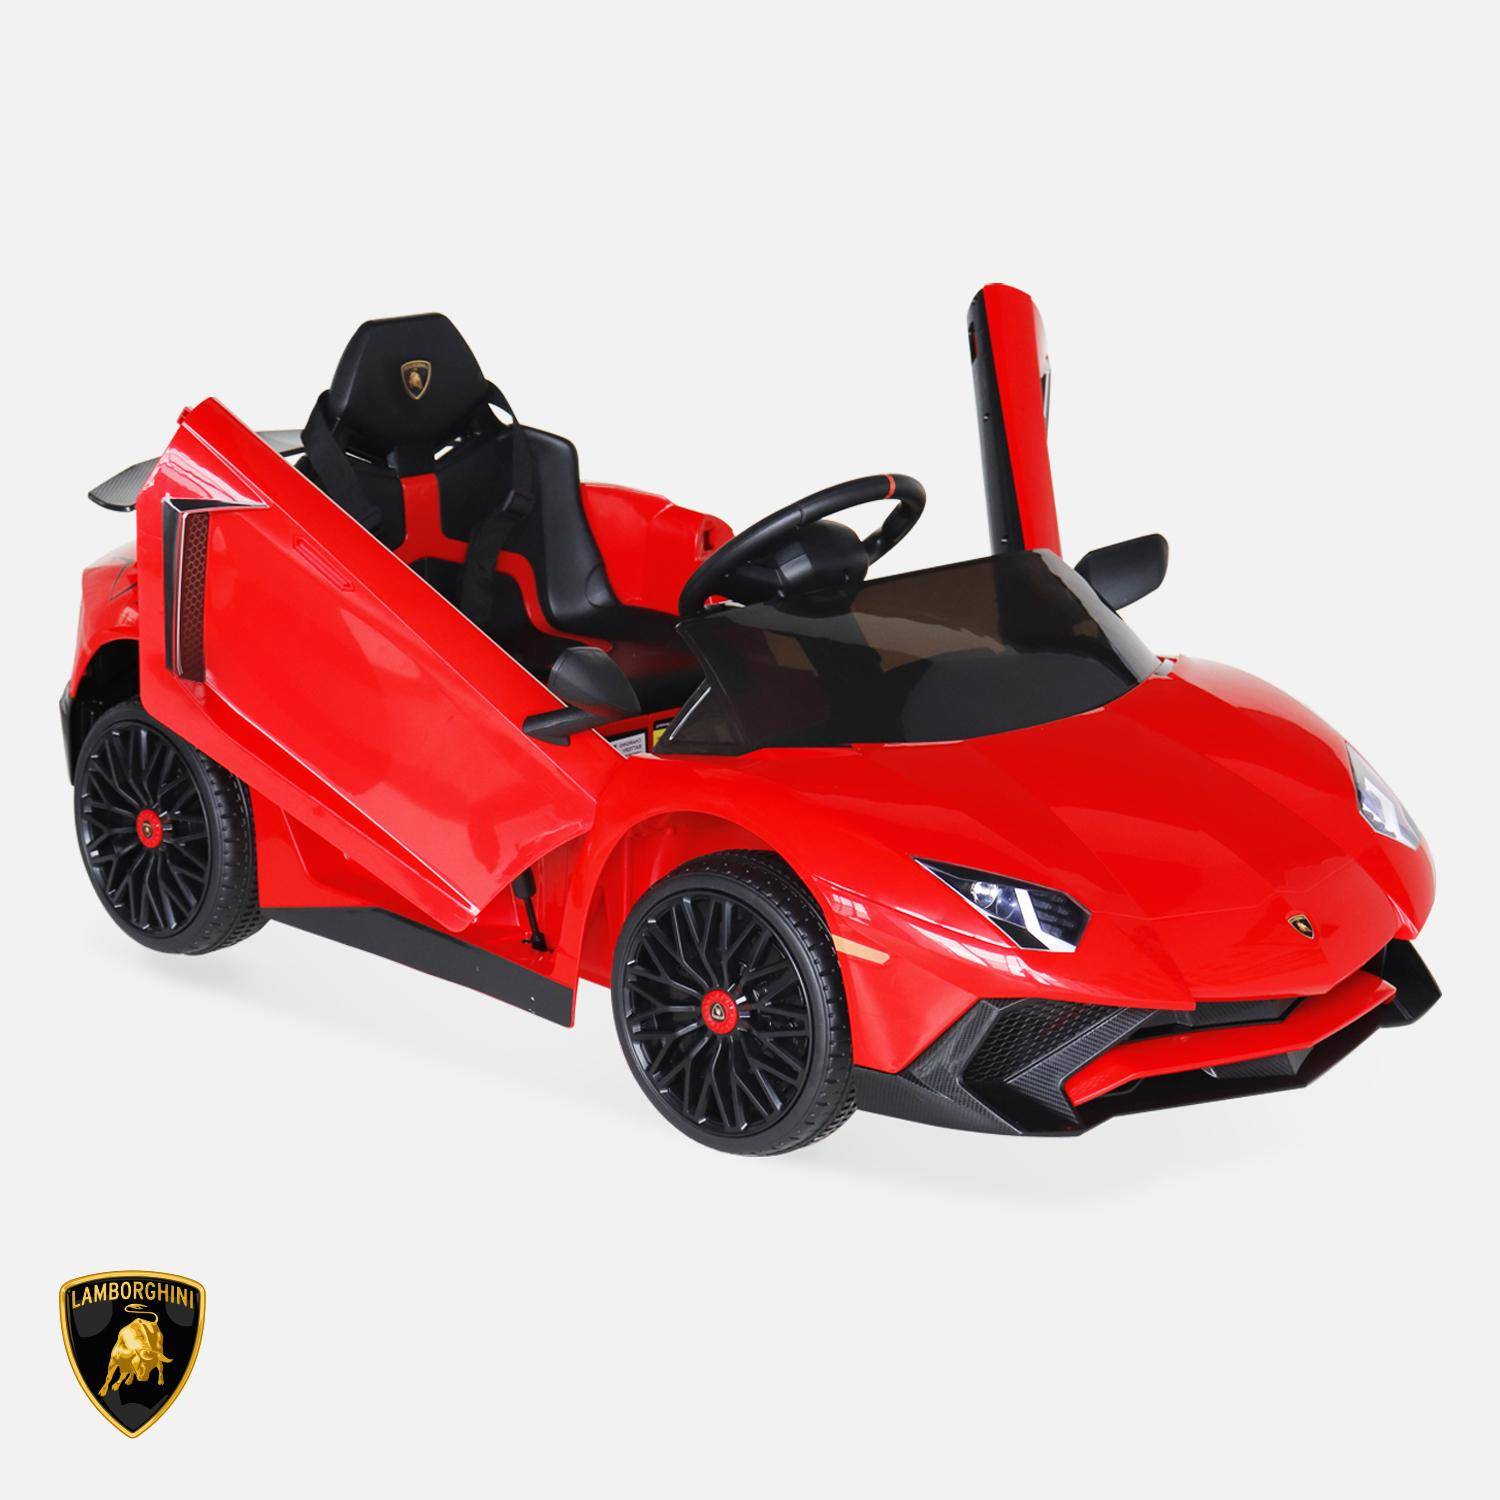 12V Lamborghini elektrische kinderauto, rood, 1 zitplaats, met autoradio, afstandsbediening, MP3, USB-poort en koplampen. Snelle levering, 2 jaar garantie.,sweeek,Photo2